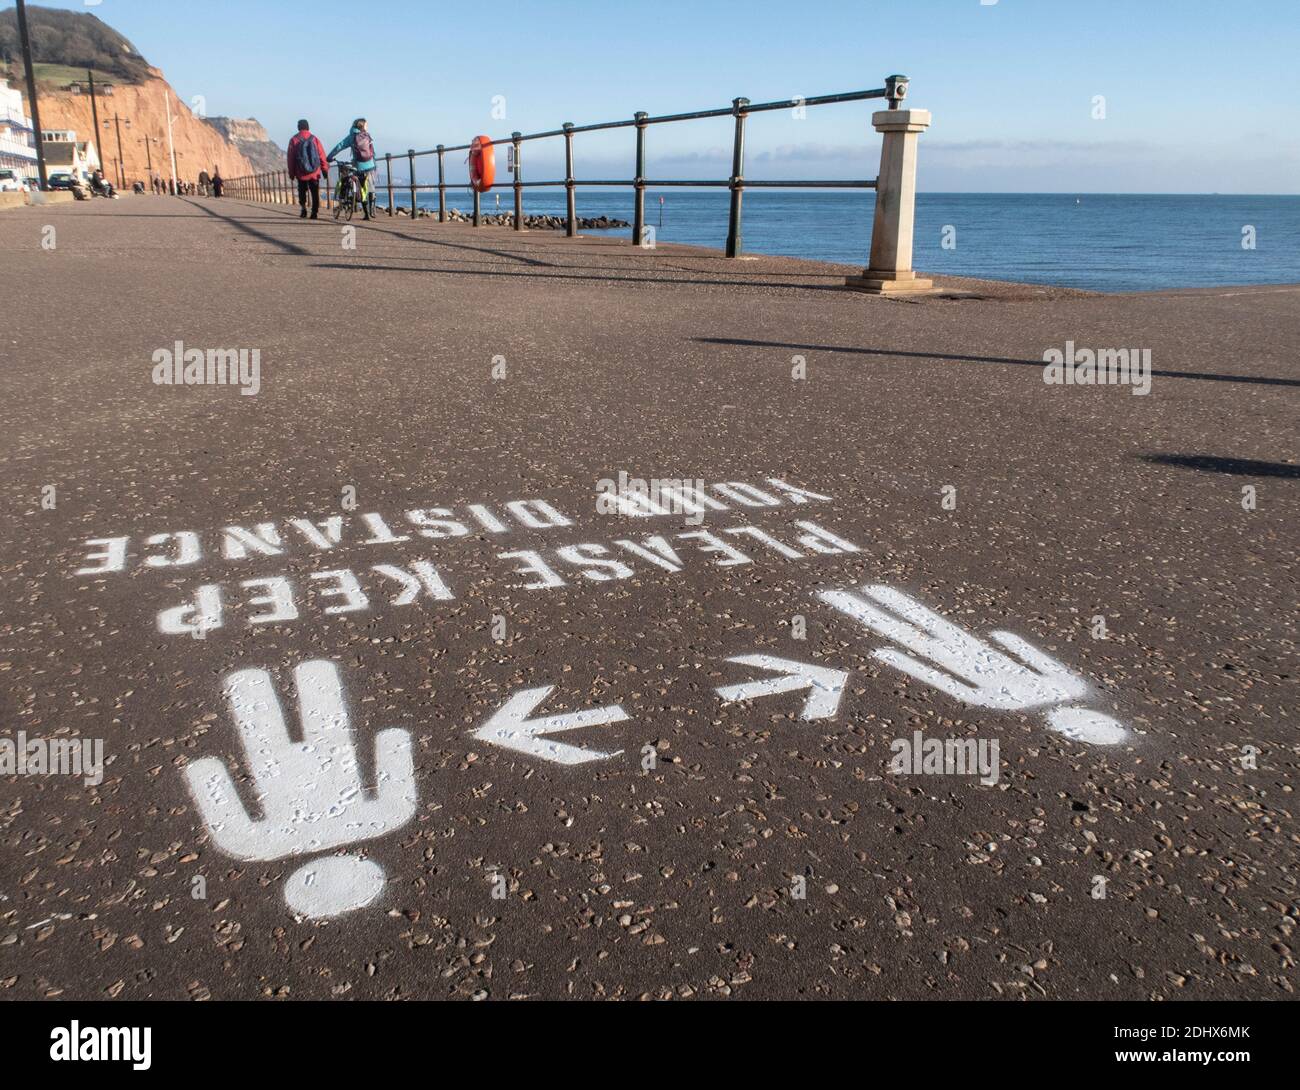 Halten Sie Ihre Distanzschilder, soziale Distanzierung, gemalt auf der Esplanade in Sidmouth, Devon, England, Großbritannien Stockfoto